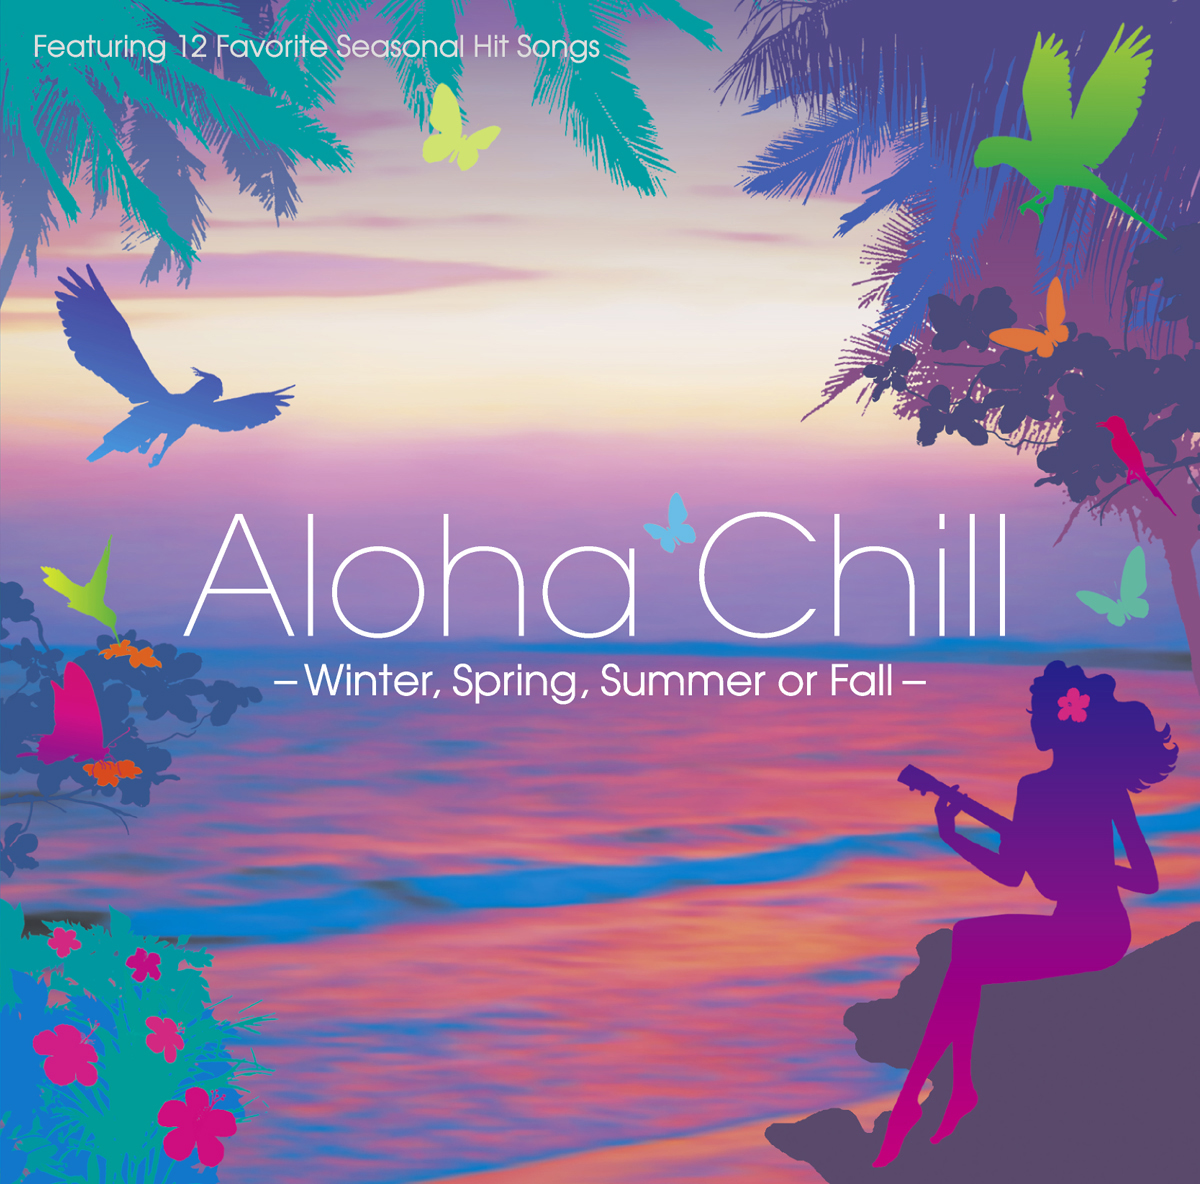 V.A. “Aloha Chill”